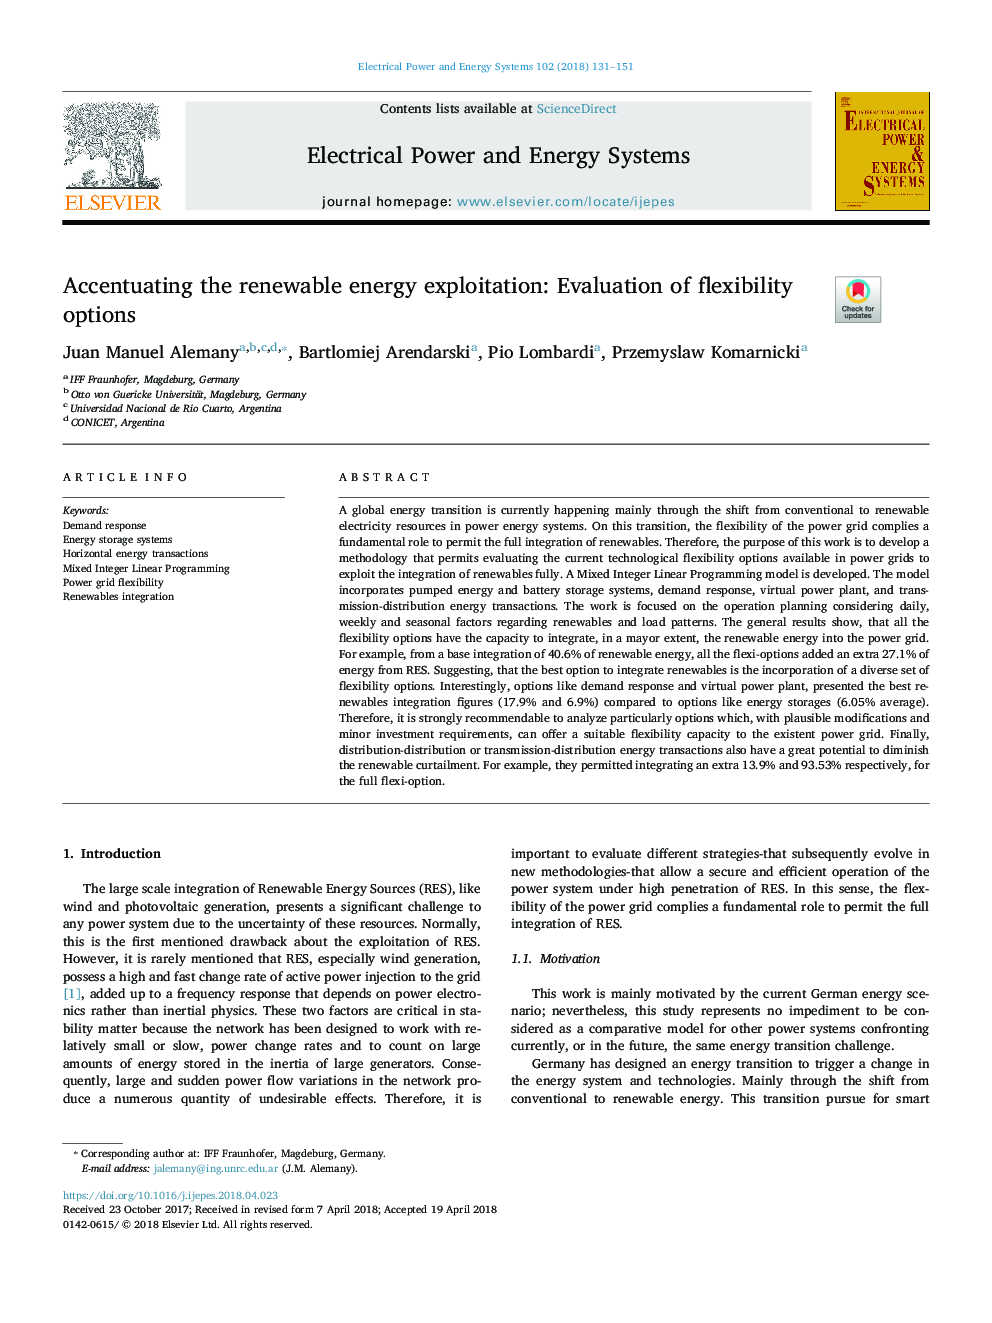 تمرکز بر بهره برداری از انرژی های تجدید پذیر: ارزیابی گزینه های انعطاف پذیری 